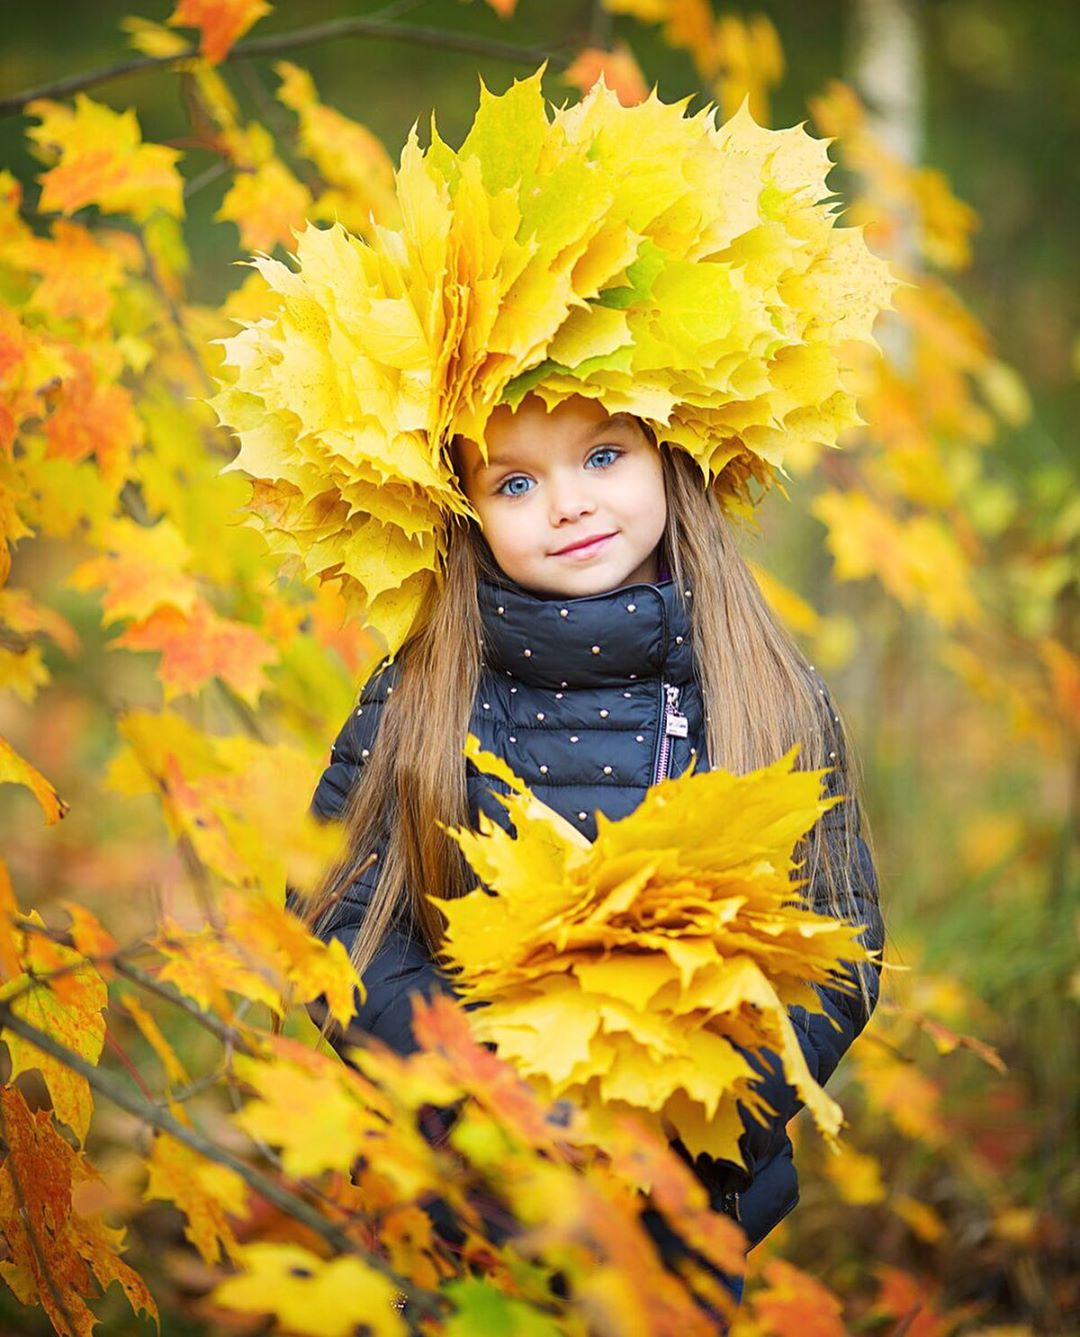 Как стильно одеть ребенка осенью? 7 образов от самой красивой девочки в мире Насти Князевой (еще не взрослых, но уже не детских) 